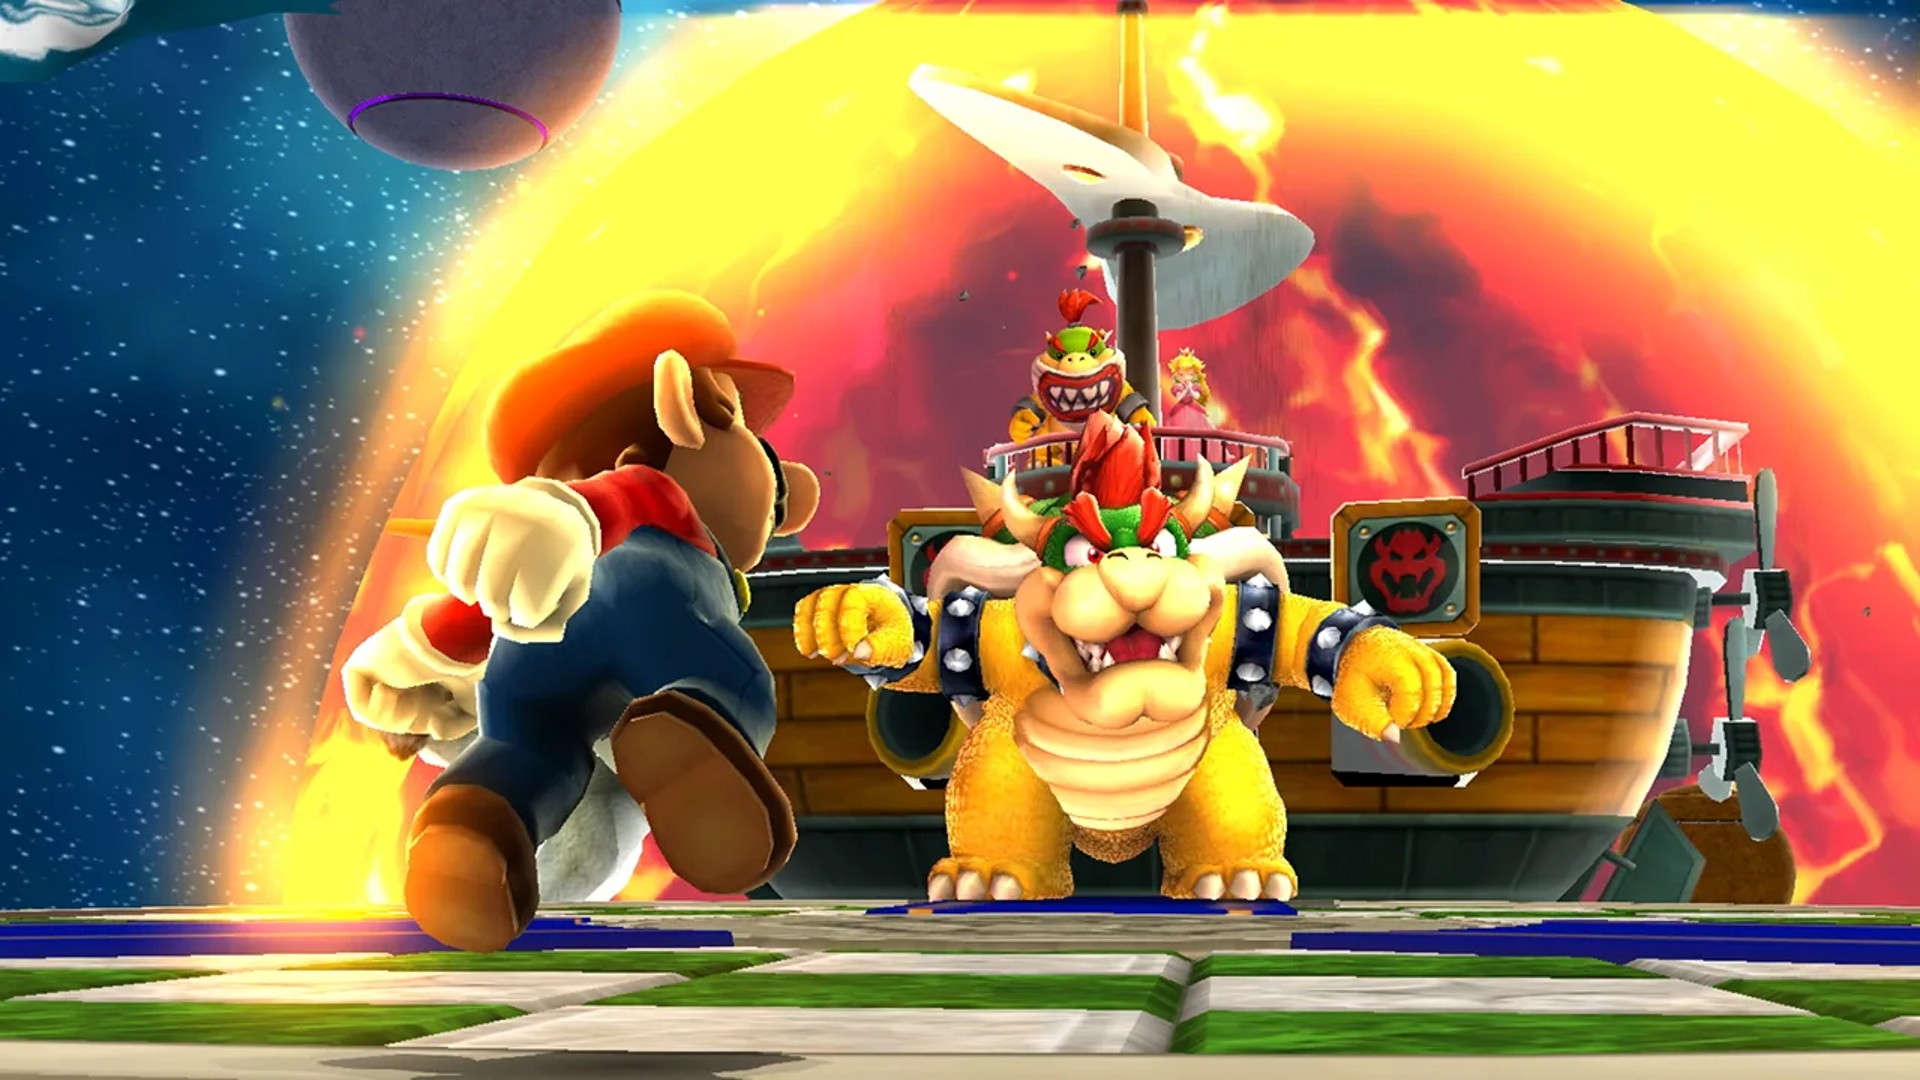 ลือ Mario ภาคใหม่ที่กำลังจะมาในปี ค.ศ. 2022 มี 2 เกมด้วยกัน